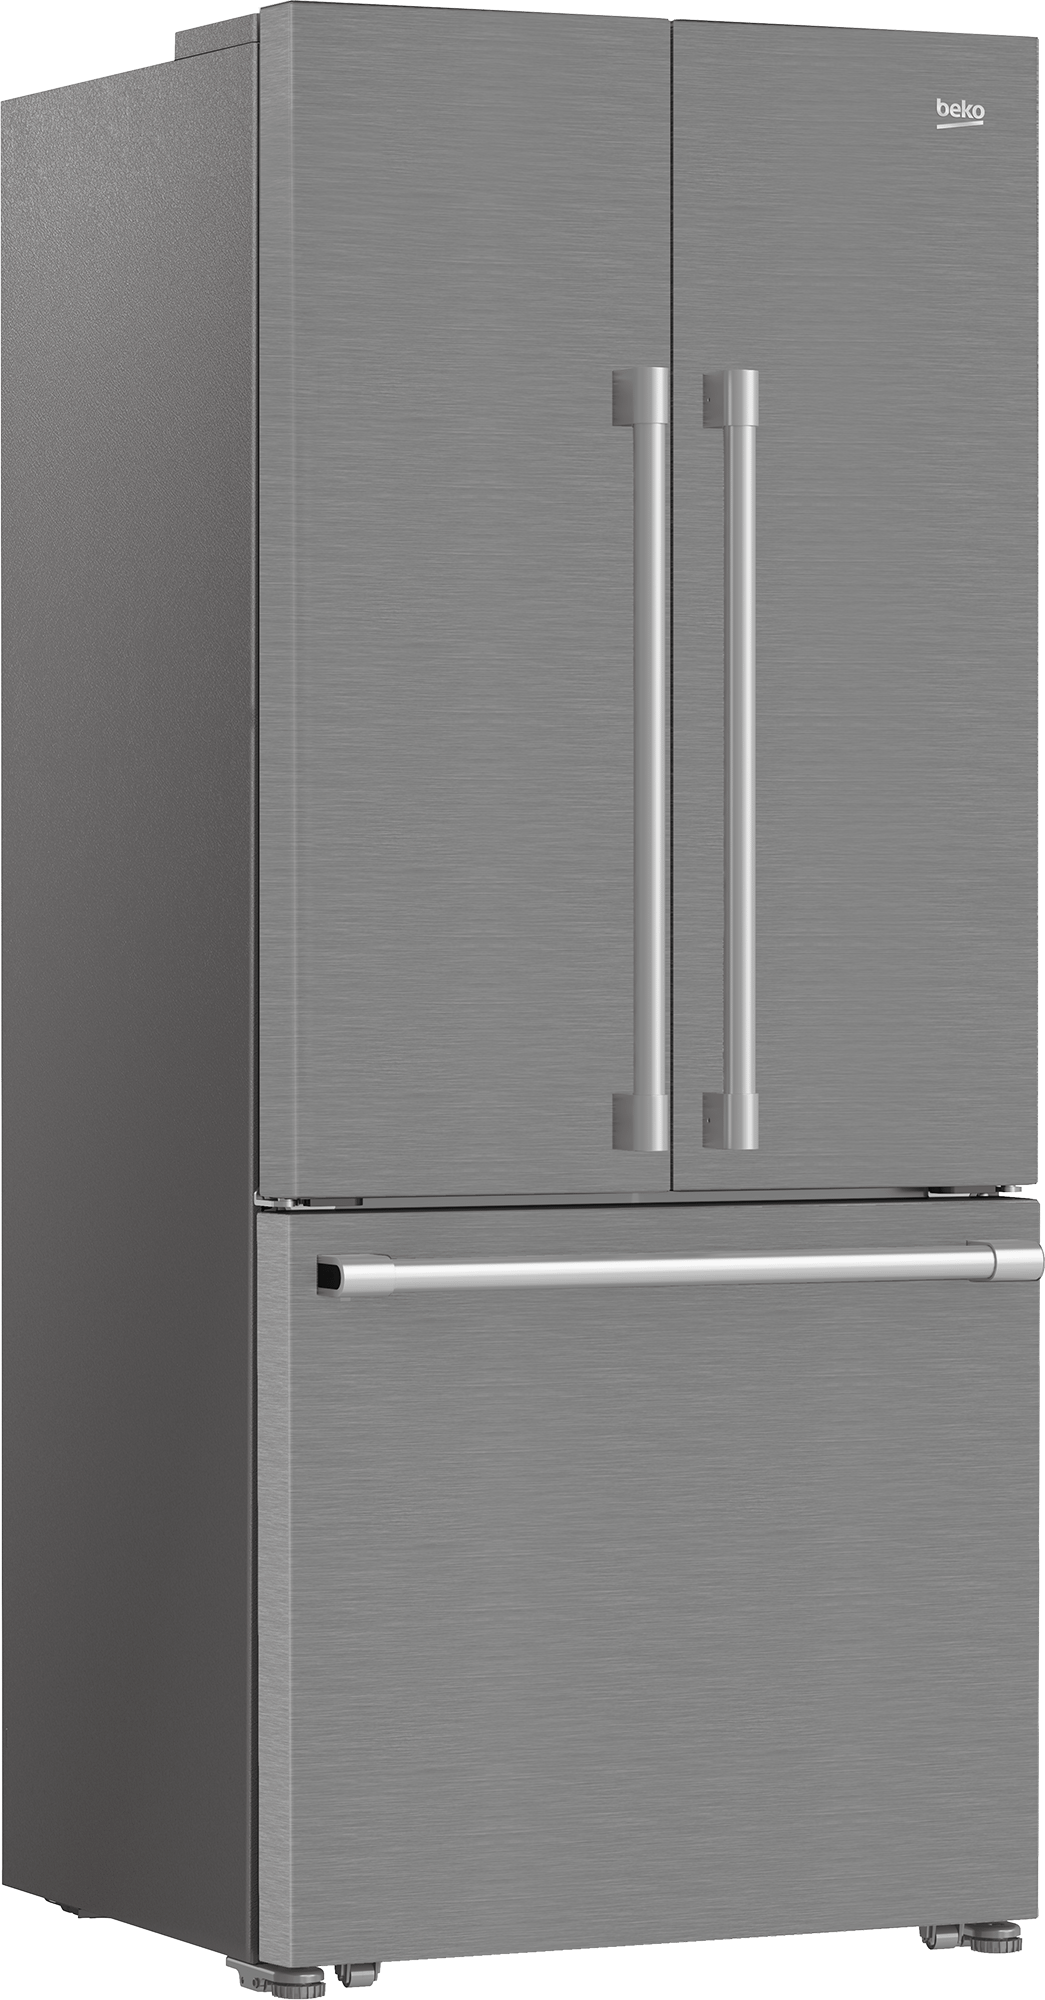 Beko 30" French Door Refrigerator